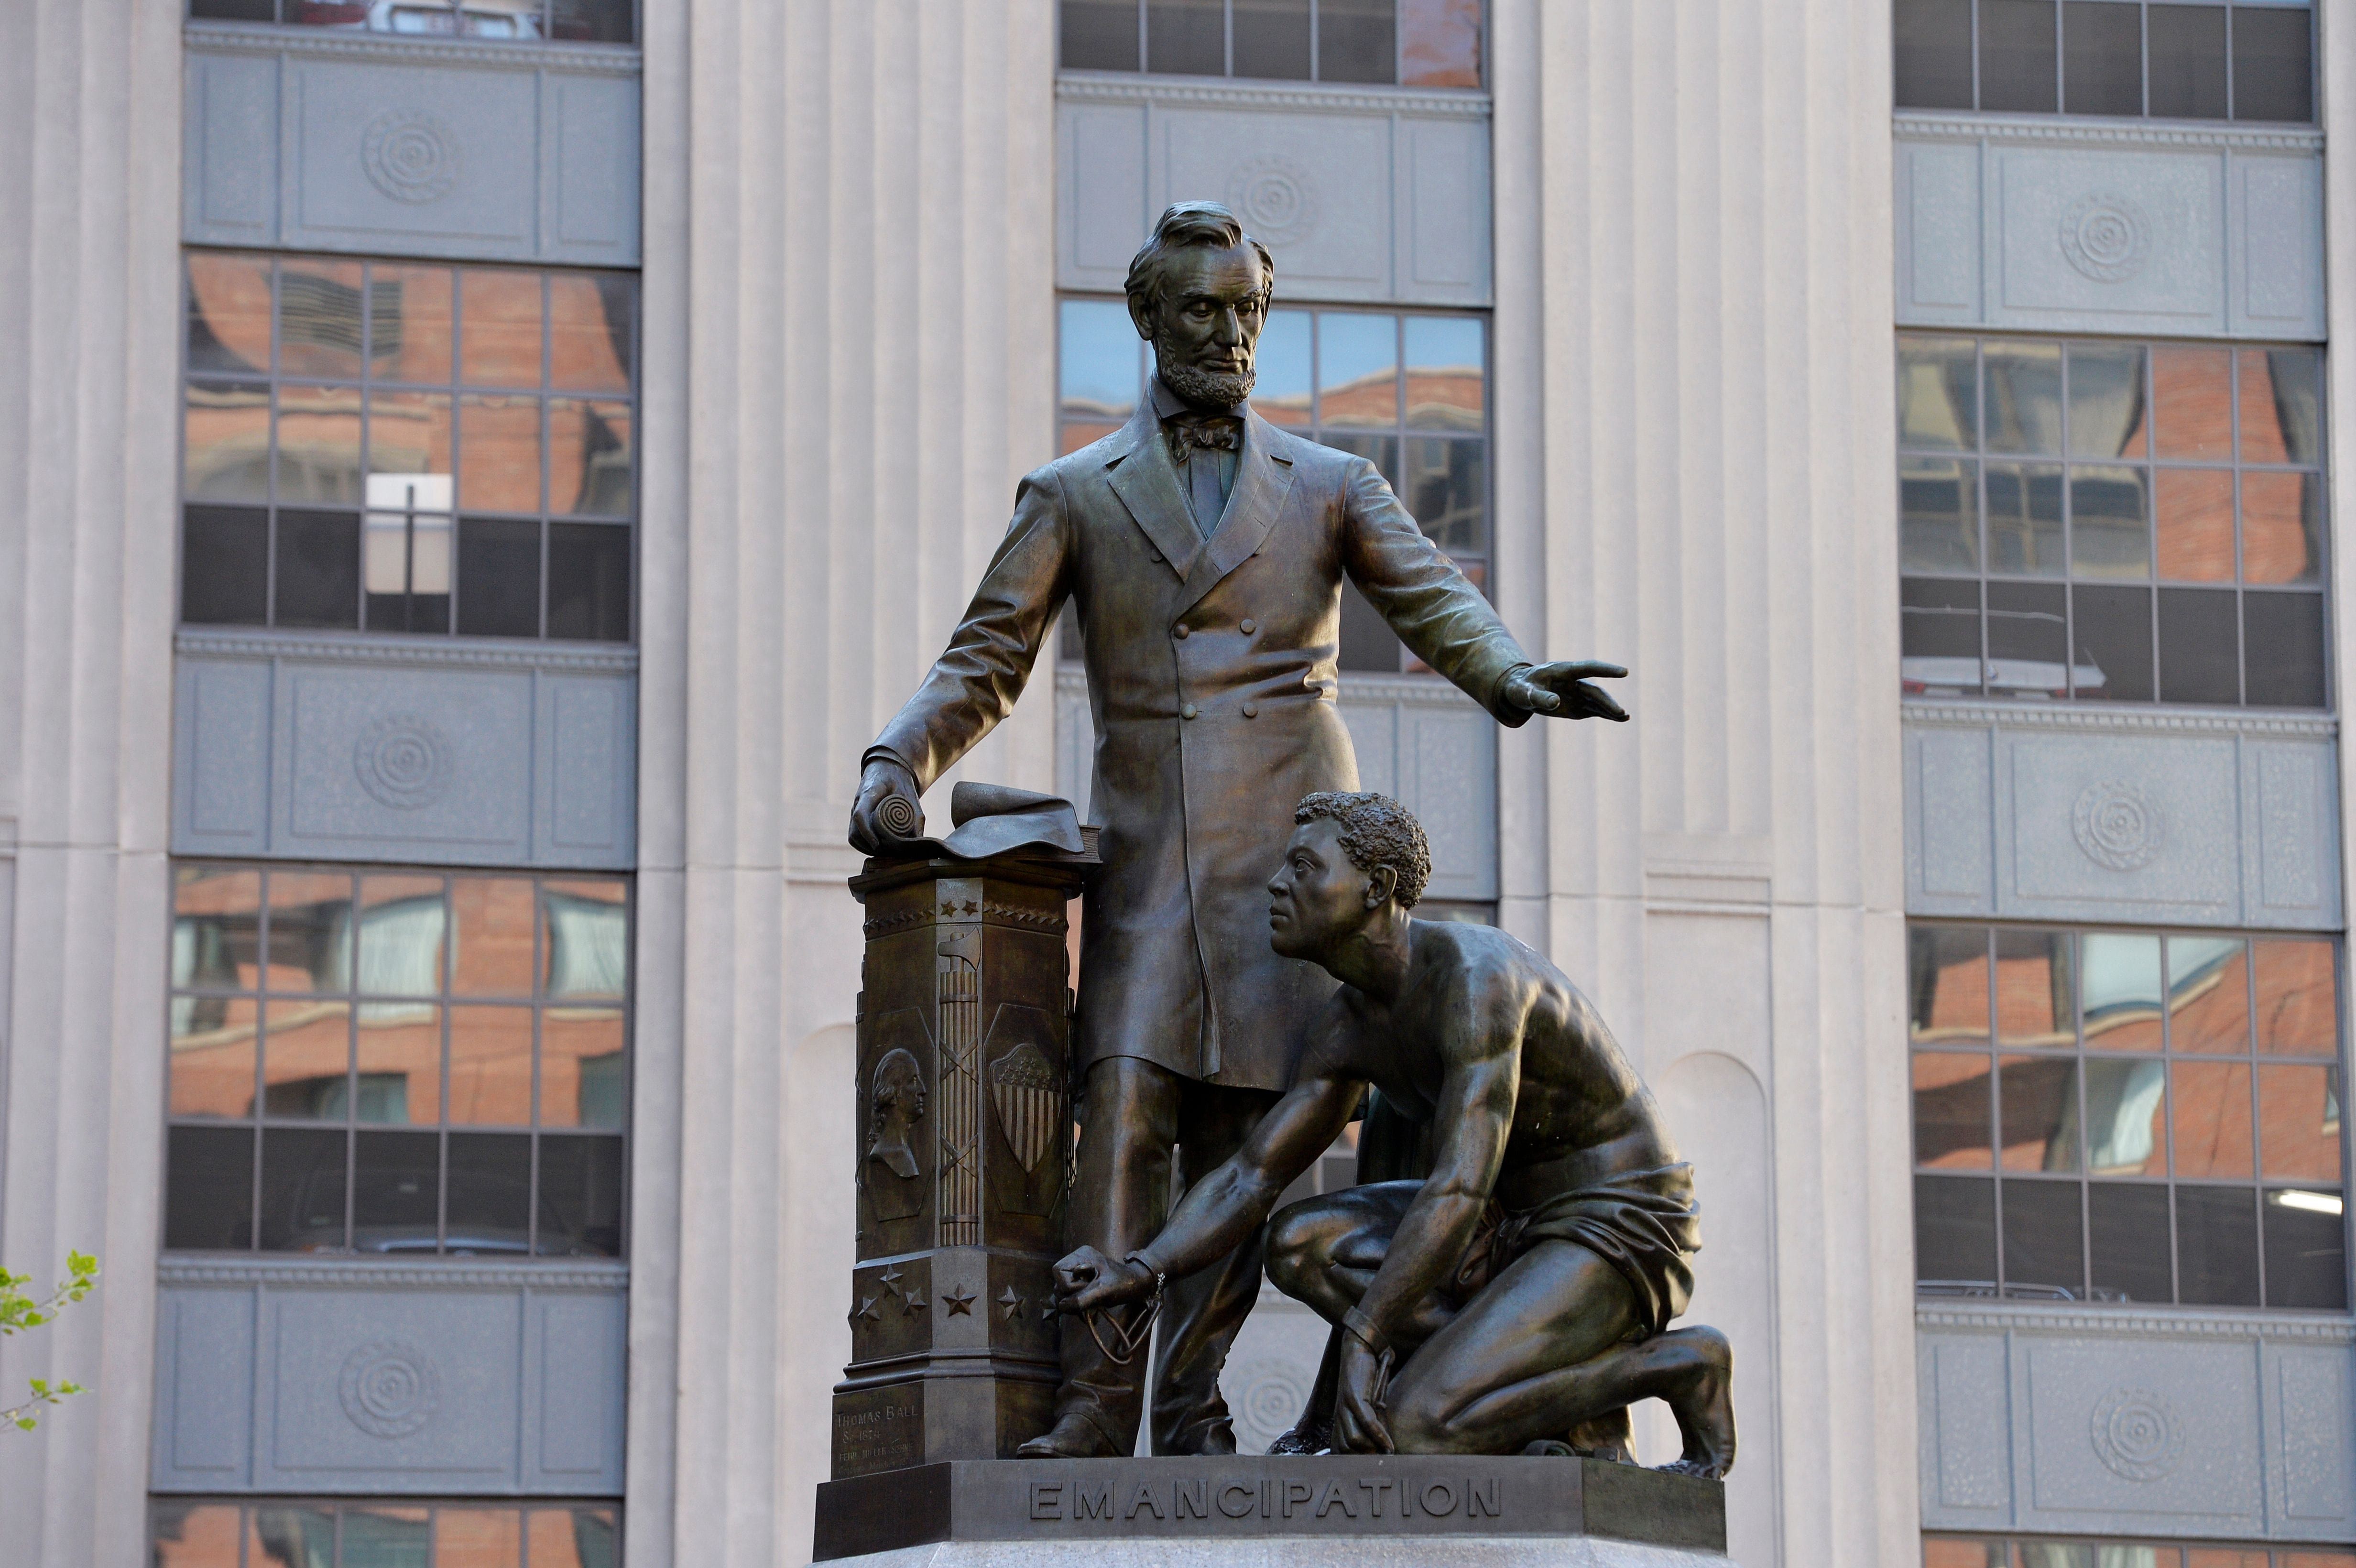 Uklonjen je kip roba i Lincolna kojeg je kritizirao Frederick Douglass